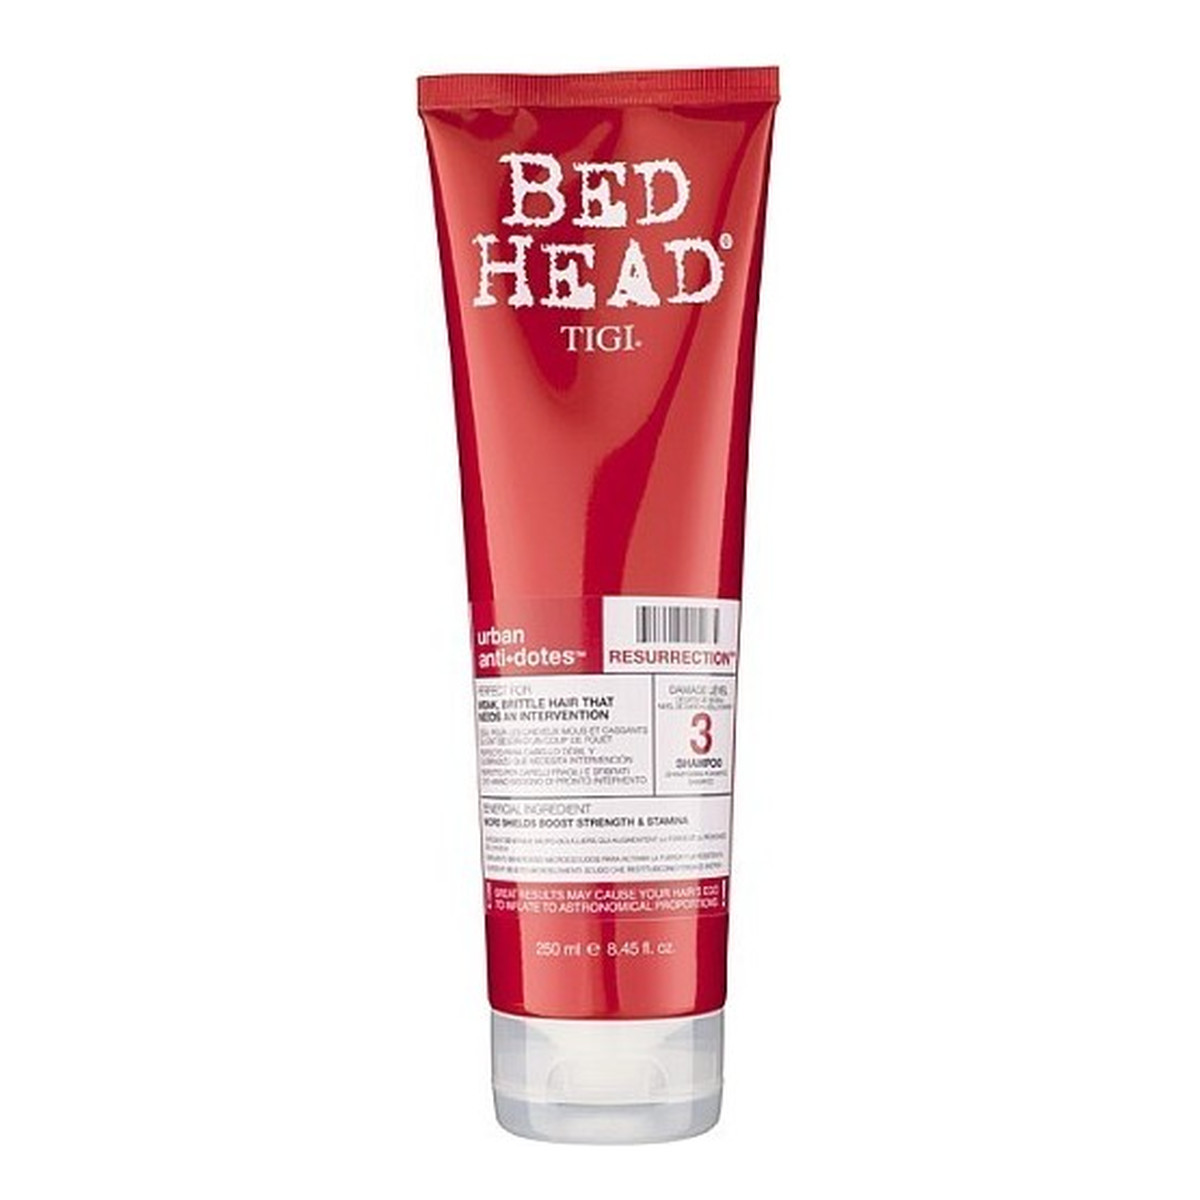 Tigi Bed Head Urban Antidotes Resurrection Shampoo Szampon mocno odbudowujący włosy 250ml